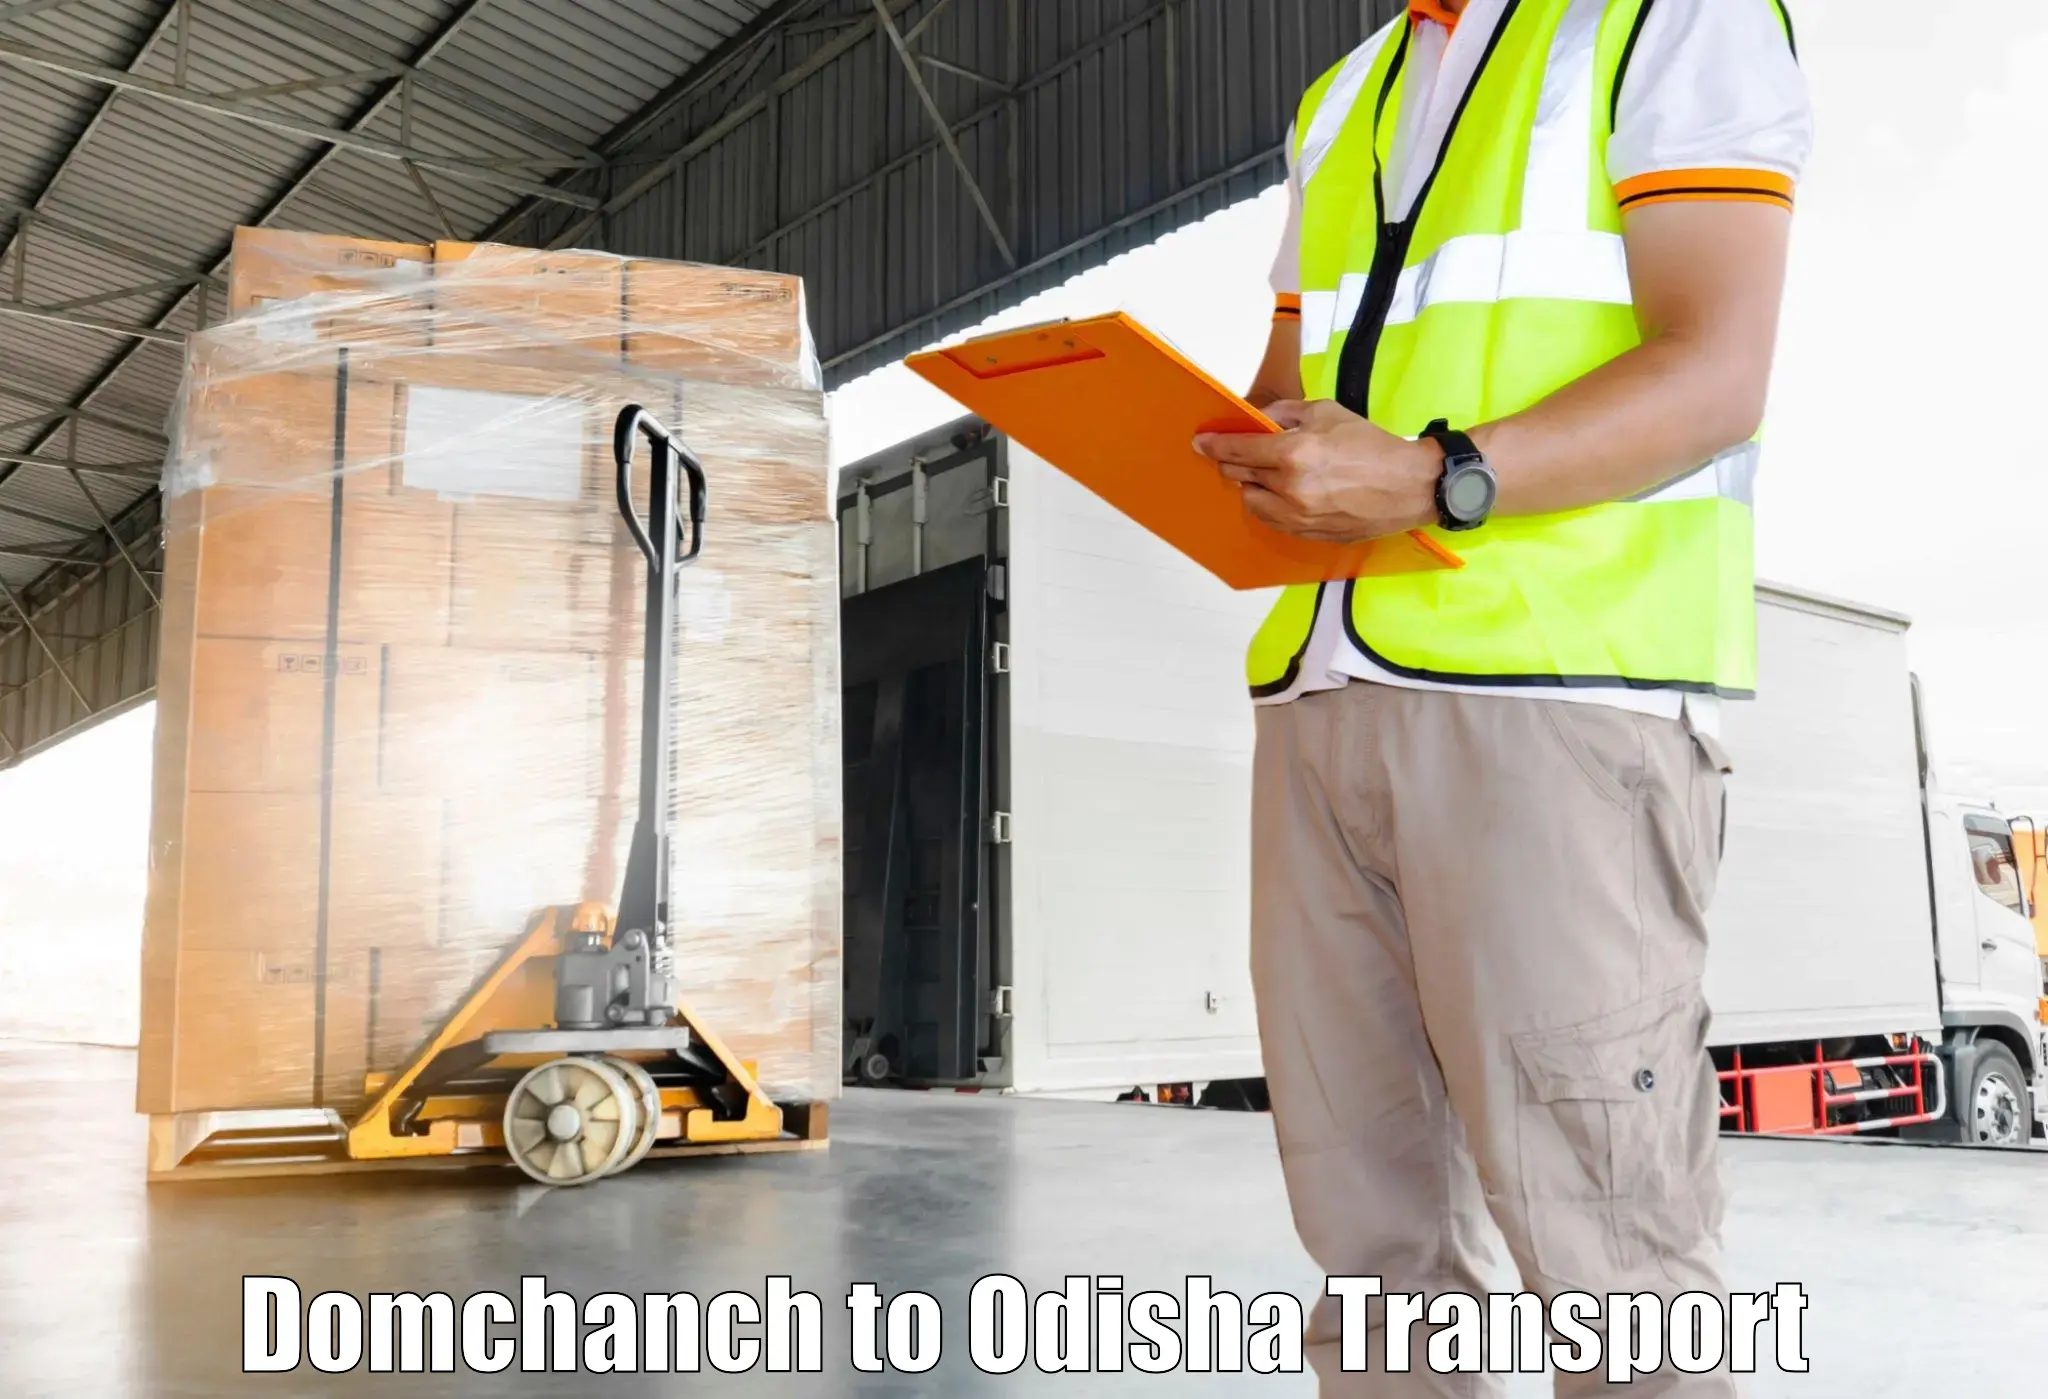 Land transport services in Domchanch to Bissam Cuttack